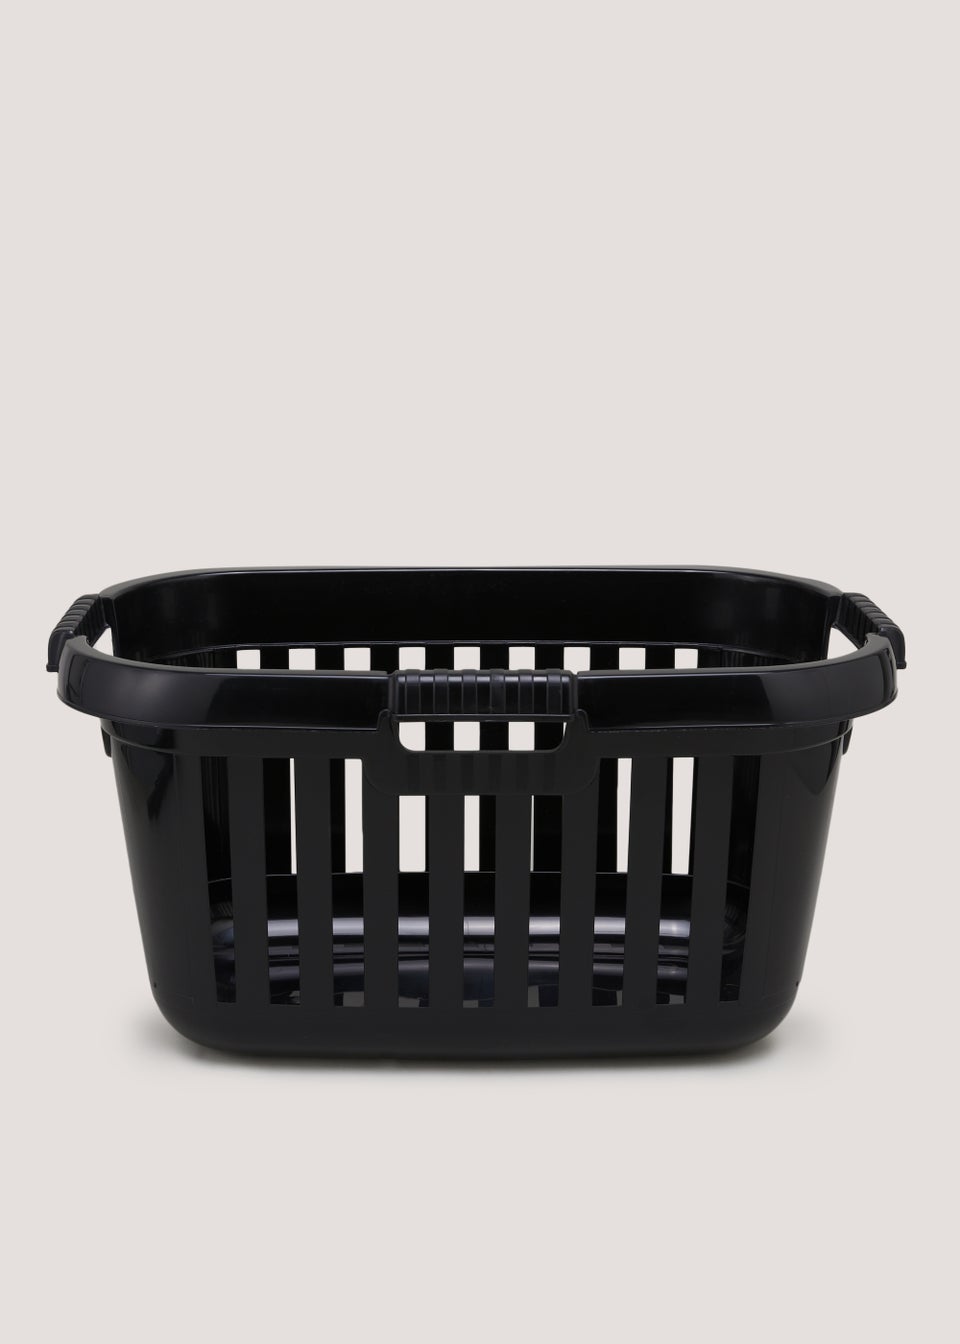 Black Plastic Laundry Basket (31.5cm x 59cm x 35cm)